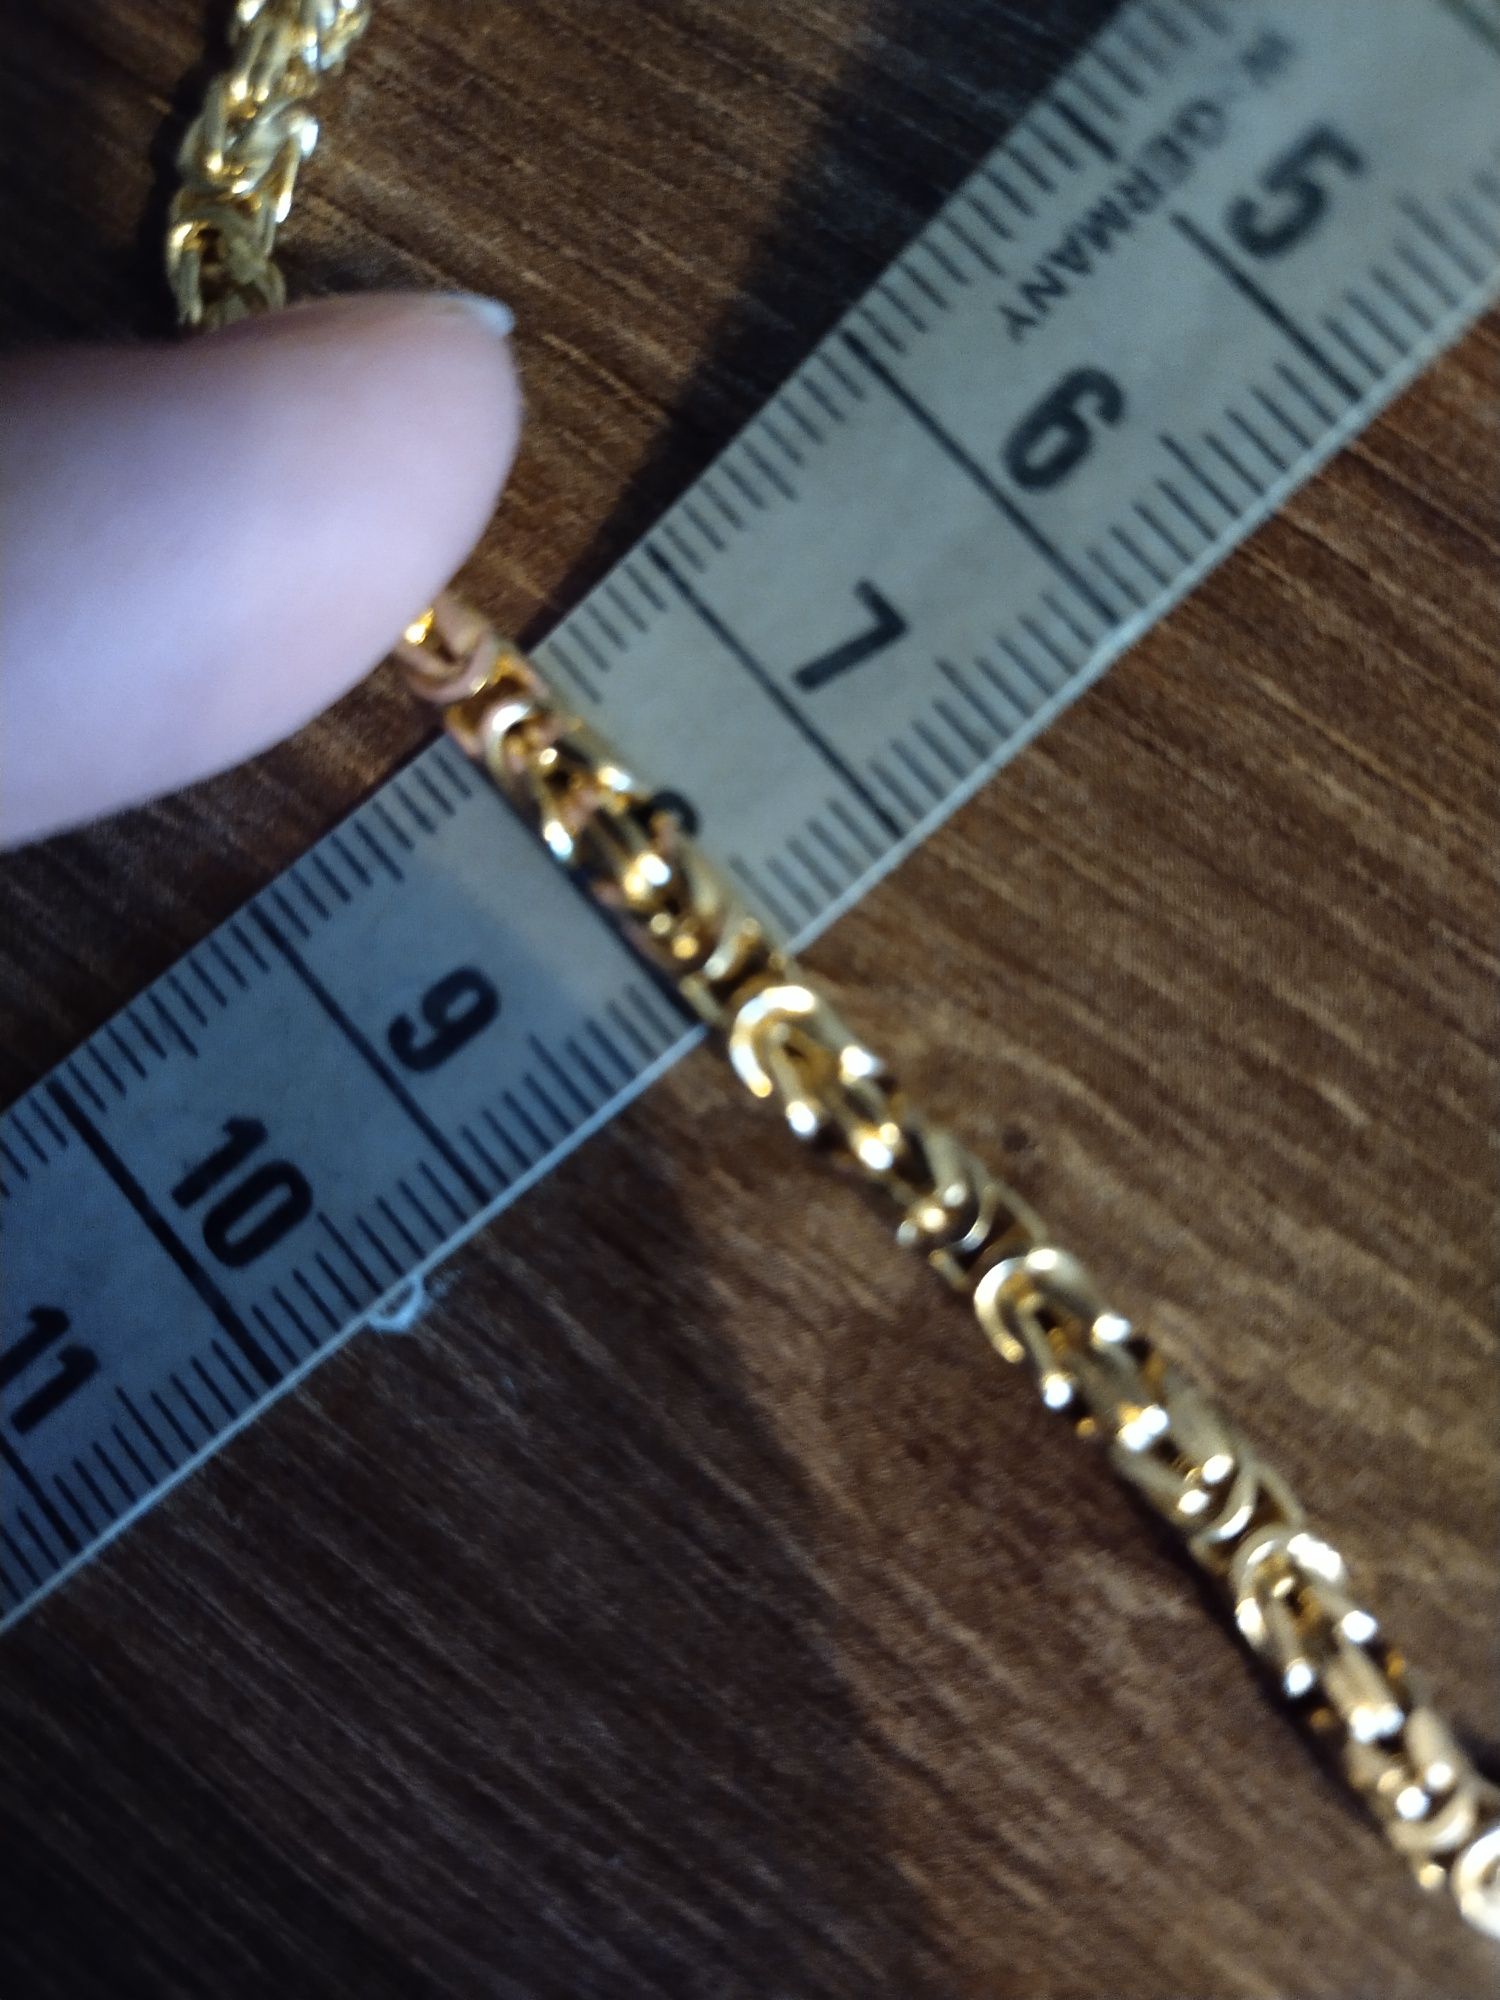 Złoty łańcuszek 585 splot królewski, 22.10 gr, 60cm